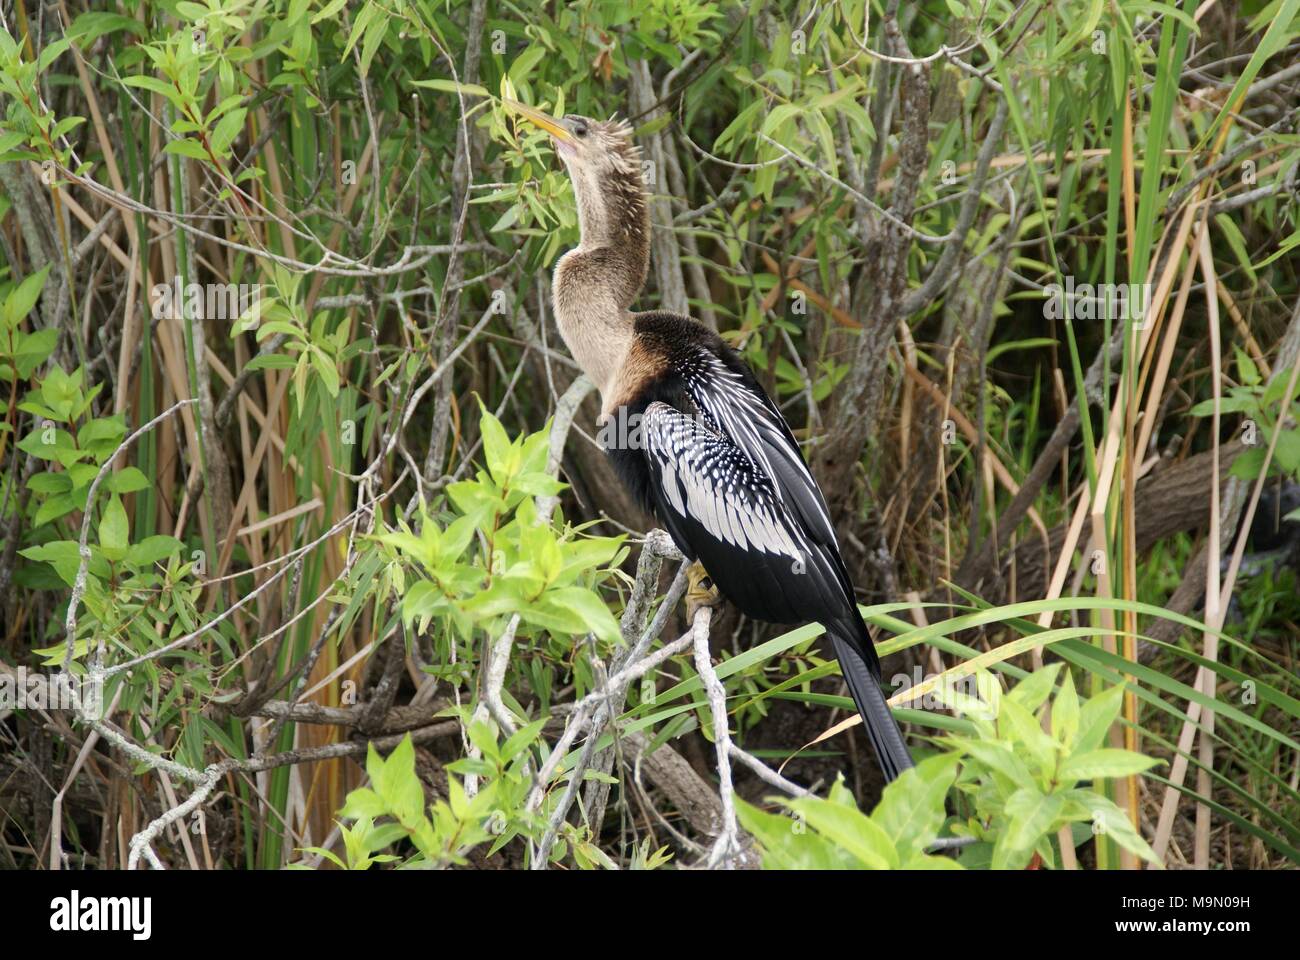 Photos prises lors d'un voyage dans les Everglades Floride US Banque D'Images